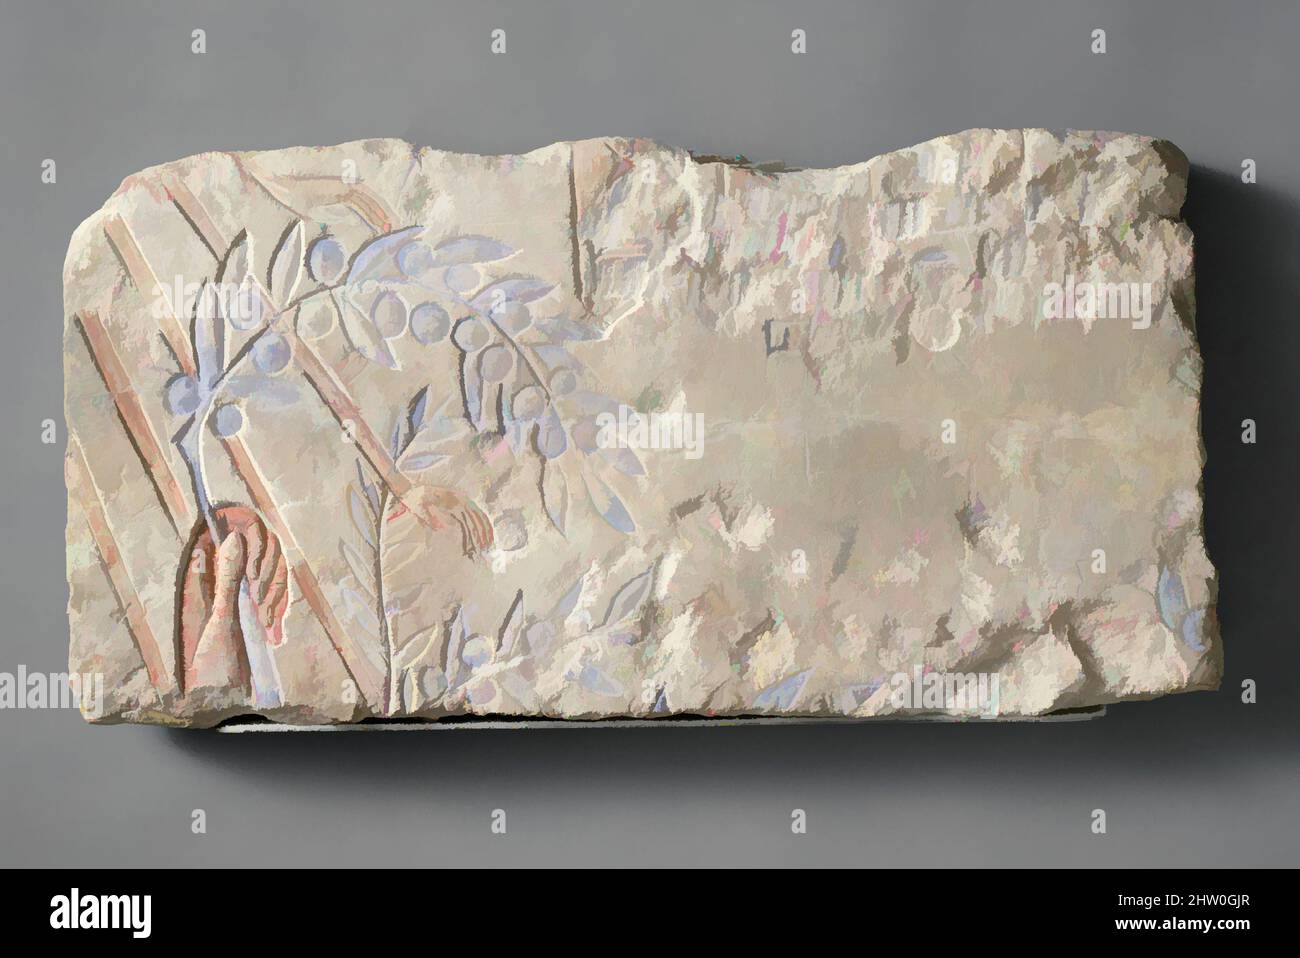 Arte ispirata a una mano che aggrappa un ramo di Olive, New Kingdom, Amarna period, Dynasty 18, ca. 1353–1323 a.C., dall'Egitto; probabilmente originario di Amarna (Akhetaten); probabilmente dal Medio Egitto, Hermopolis (Ashmunein; Khemenu), calcare, vernice, H. 8 11/16 poll. (22 cm), in questo frammento, opere classiche modernizzate da Artotop con un tuffo di modernità. Forme, colore e valore, impatto visivo accattivante sulle emozioni artistiche attraverso la libertà delle opere d'arte in modo contemporaneo. Un messaggio senza tempo che persegue una nuova direzione selvaggiamente creativa. Artisti che si rivolgono al supporto digitale e creano l'NFT Artotop Foto Stock